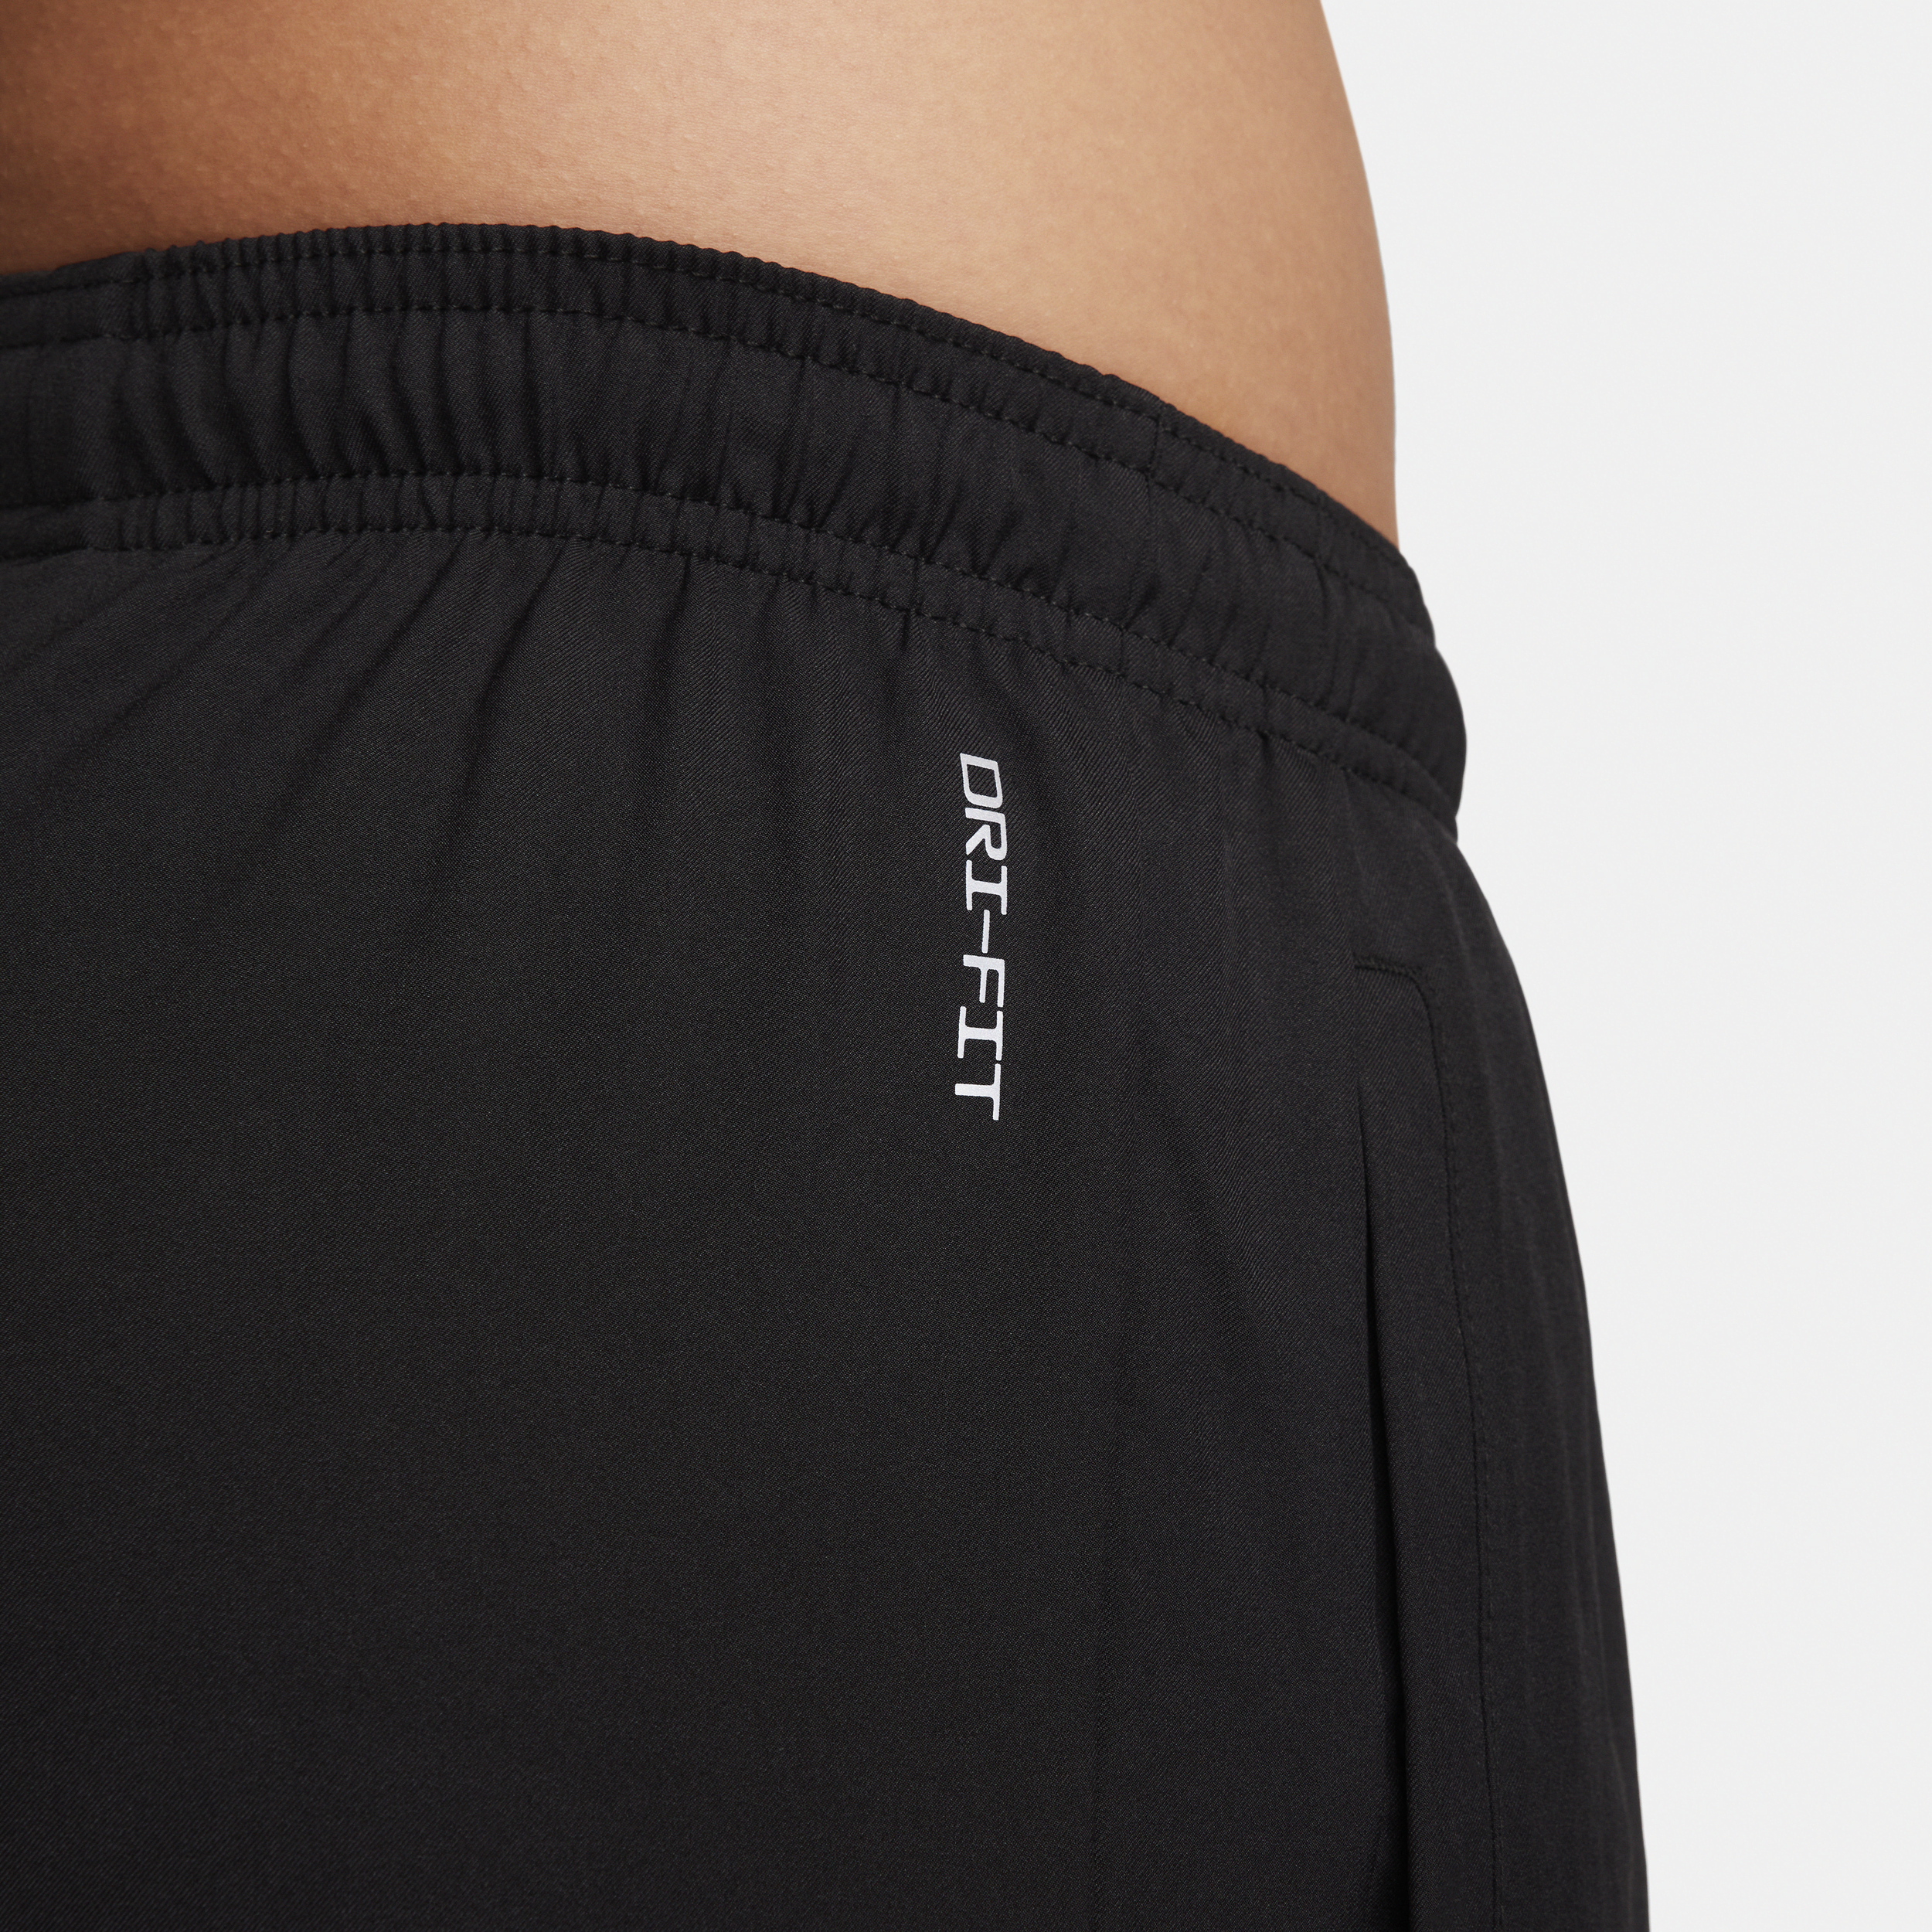 Nike Challenger Flash Dri-FIT geweven hardloopbroek voor heren Zwart